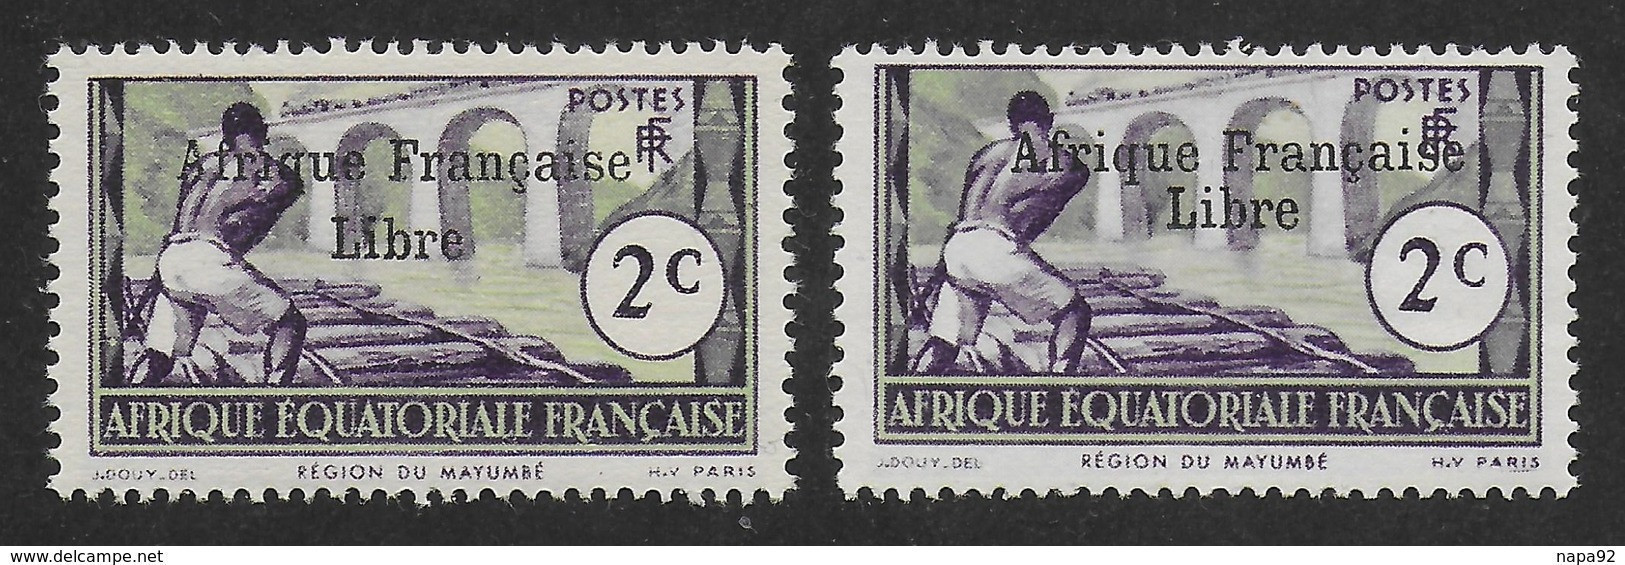 AFRIQUE EQUATORIALE FRANCAISE - AEF - A.E.F. - 1941 - YT 157** - 2ème TIRAGE - Neufs